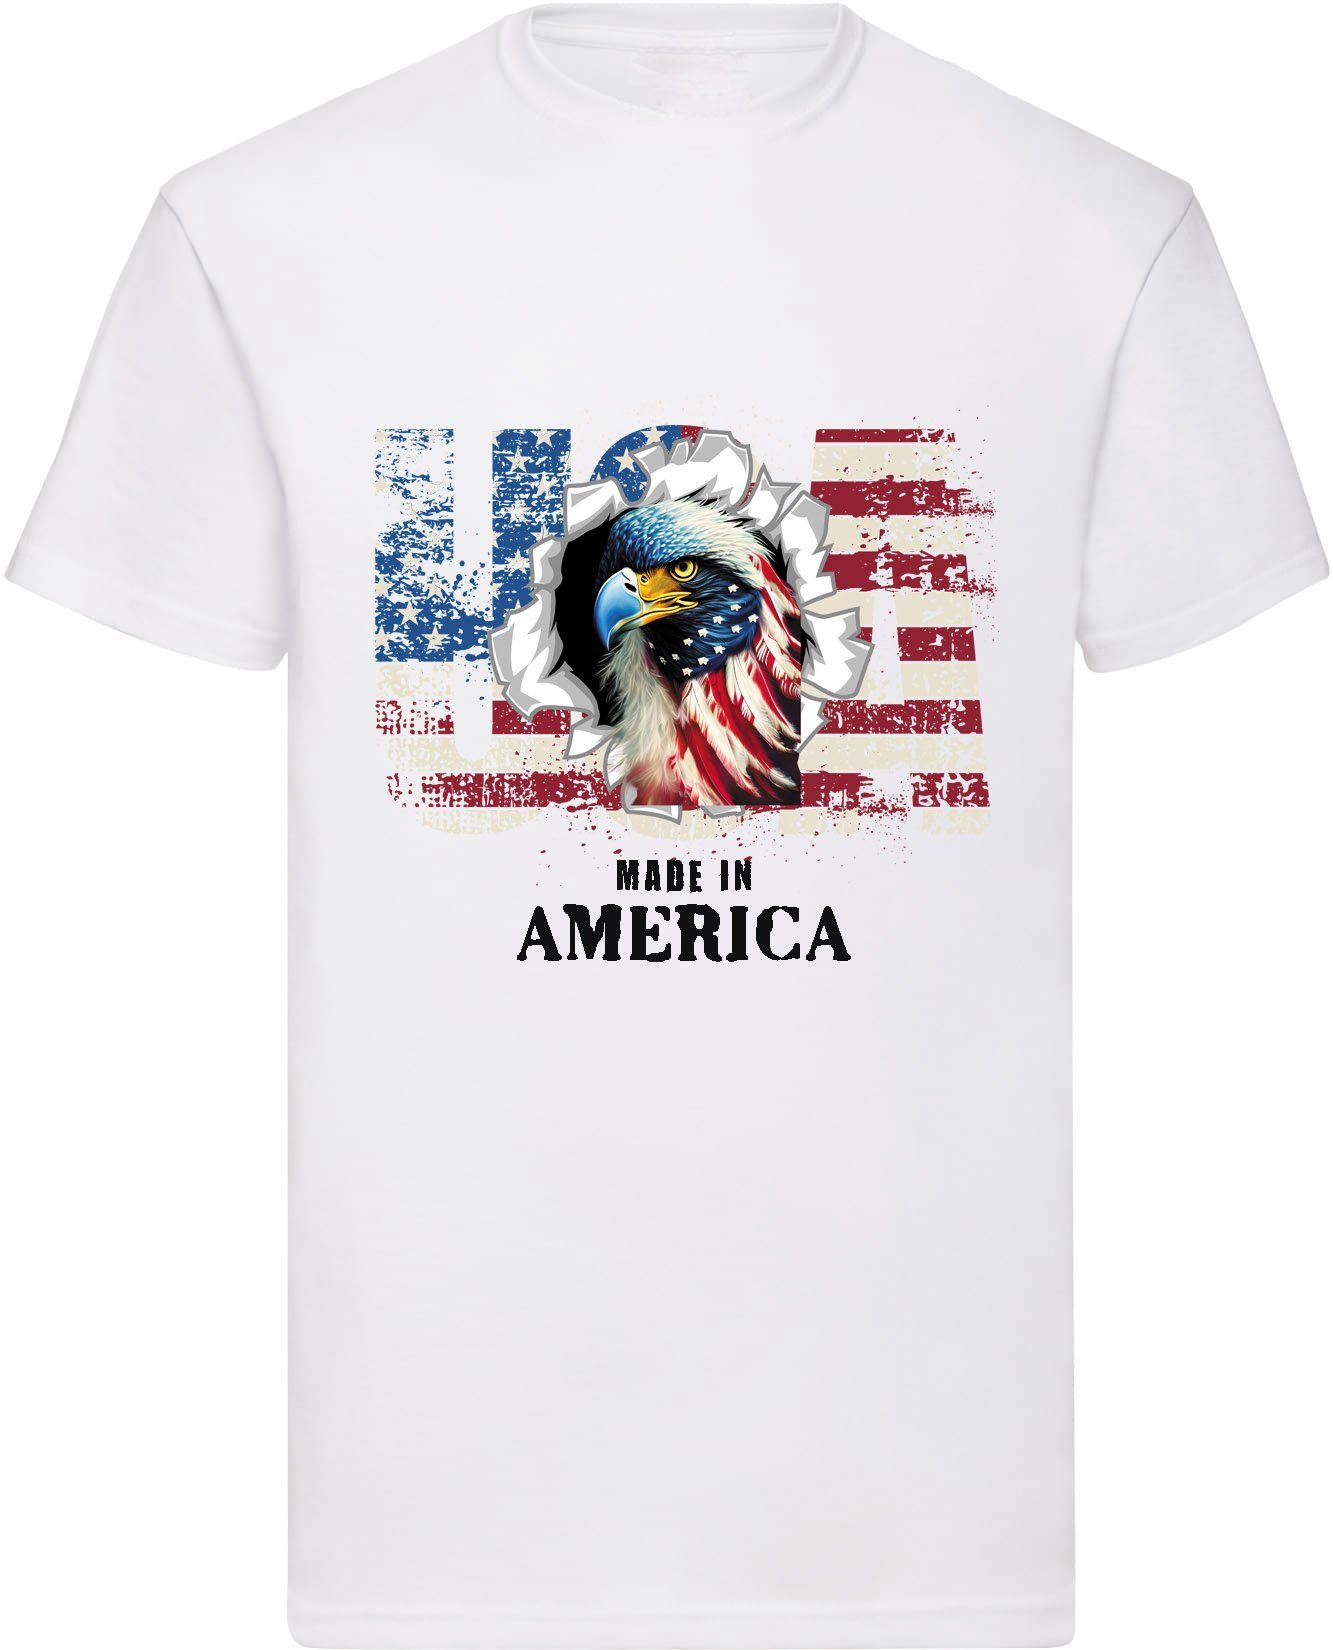 Banco T-Shirt Herren Druck T-Shirt Adler Weiß Baumwolle 100% Day Independence (01) USA